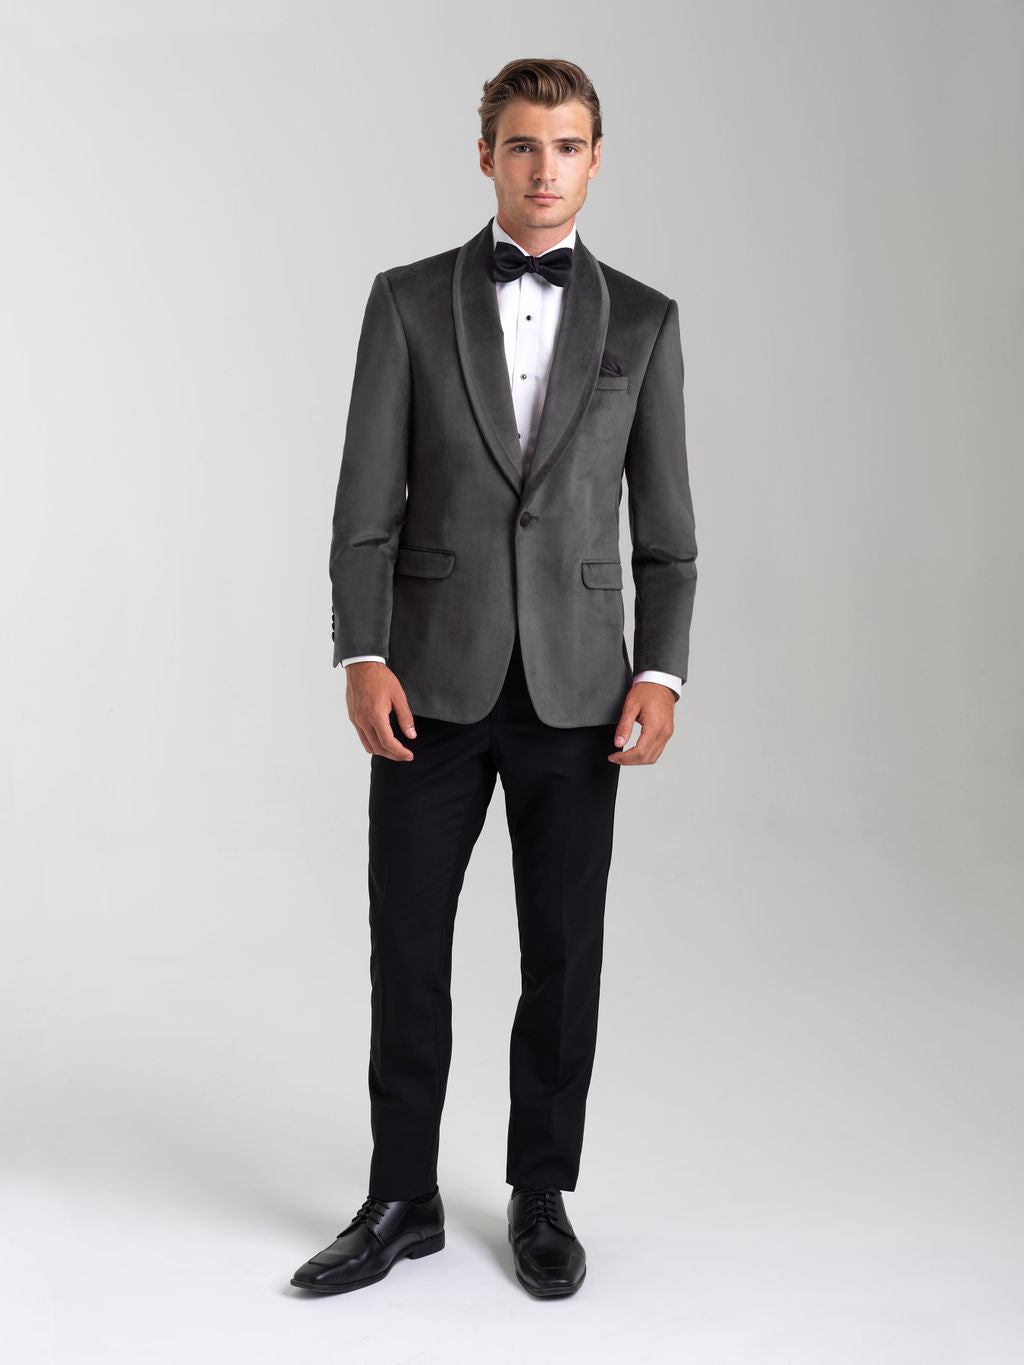 Shop Cemden Man Made Material Tuxedo | The Suit Depot